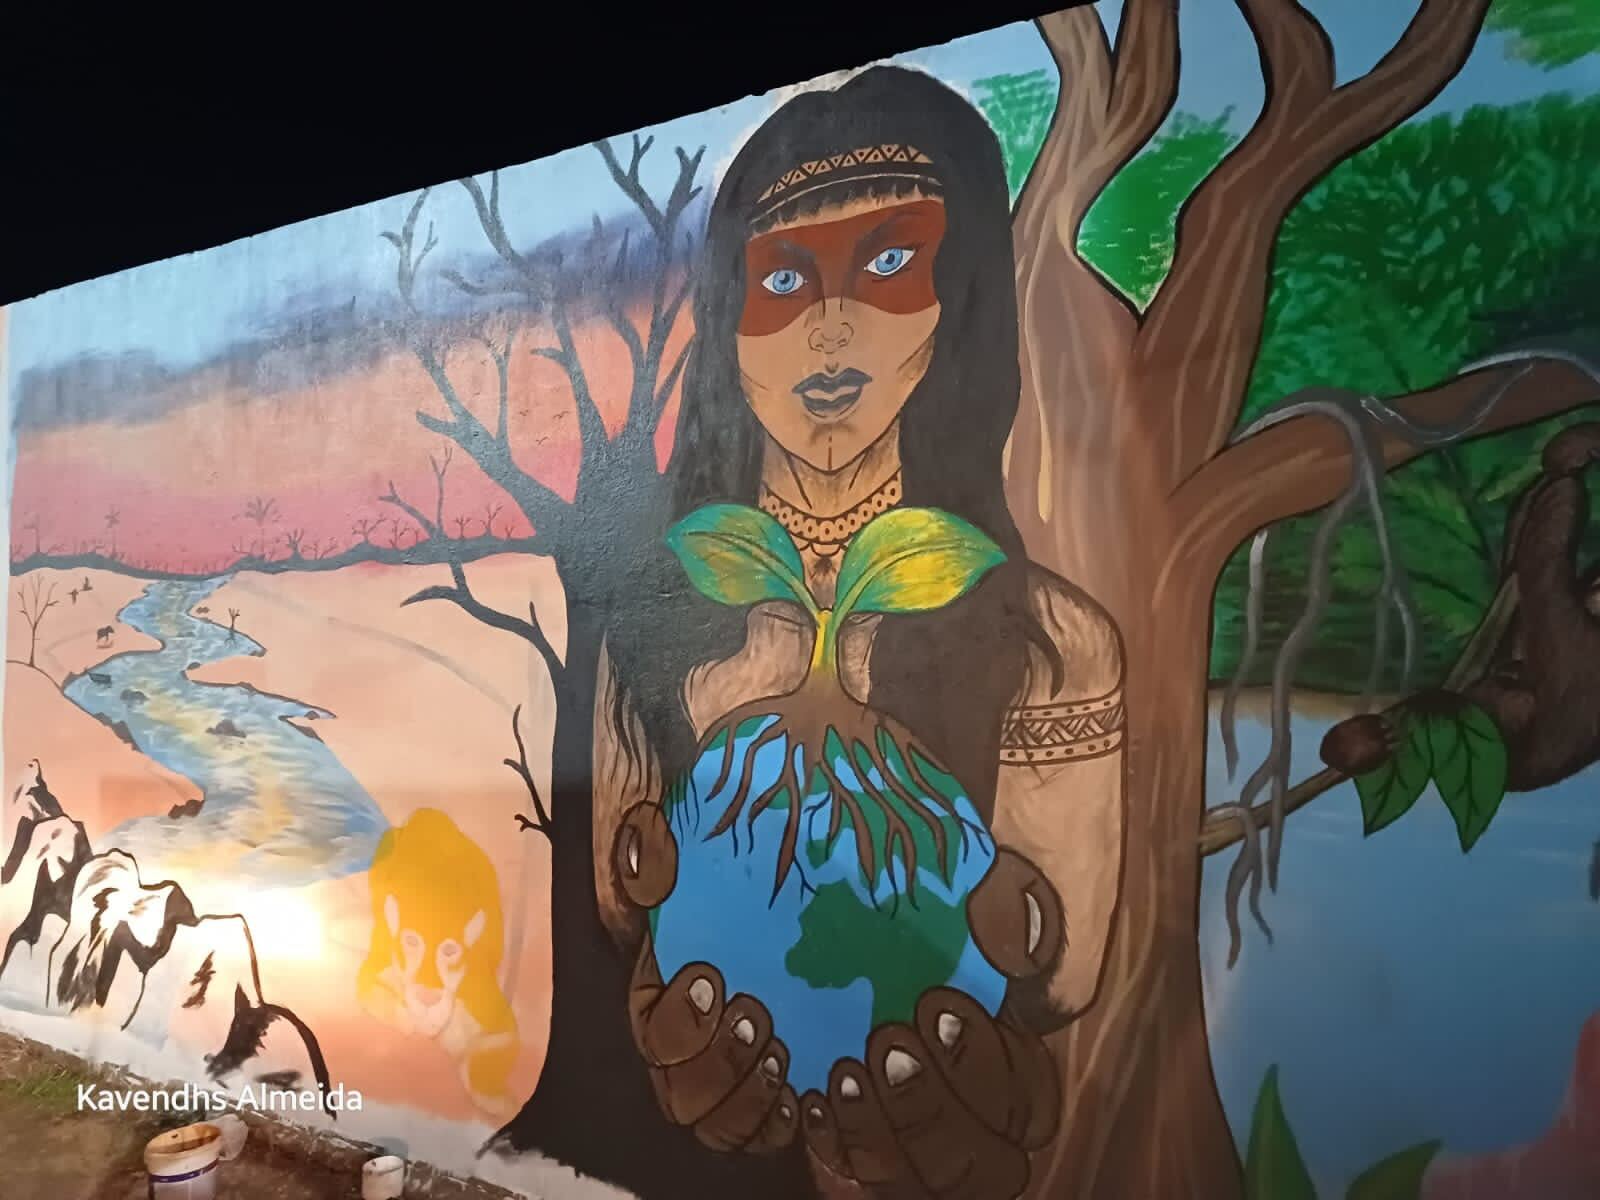 Brezilya: Yerel topluluklar gerçekleştirecekleri Güç Ver eylemlerine hazırlık olarak Silves'te duvar resimleri boyadı ve ağaçlar dikti. Bu topluluklar Amazon'da fosil gaza karşı mücadele veriyor. Fotoğraf: Kavendhs Almeida